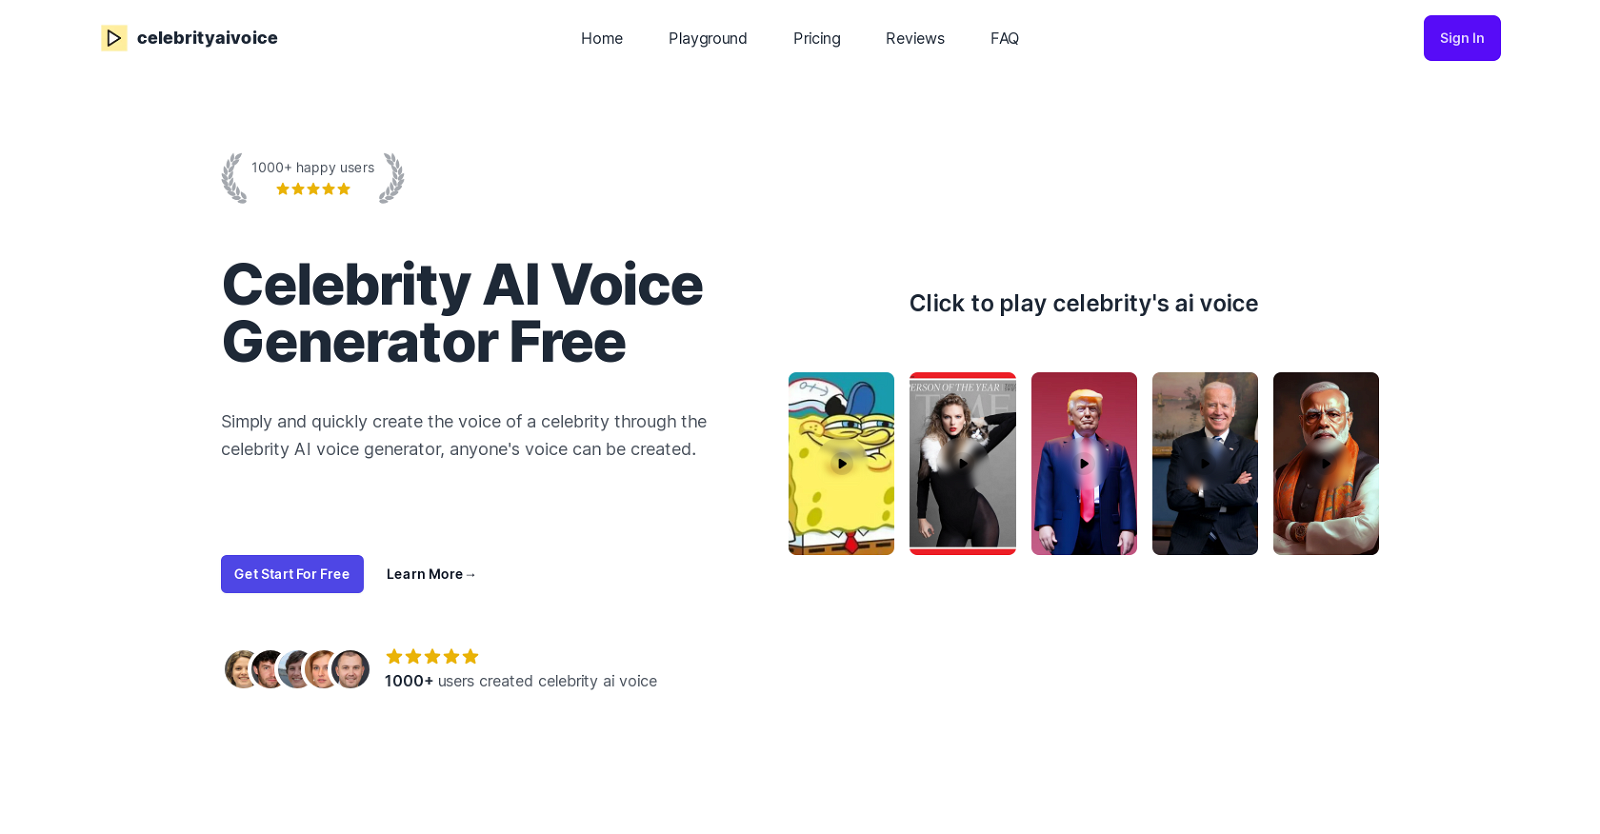 Celebrity AI Voice website